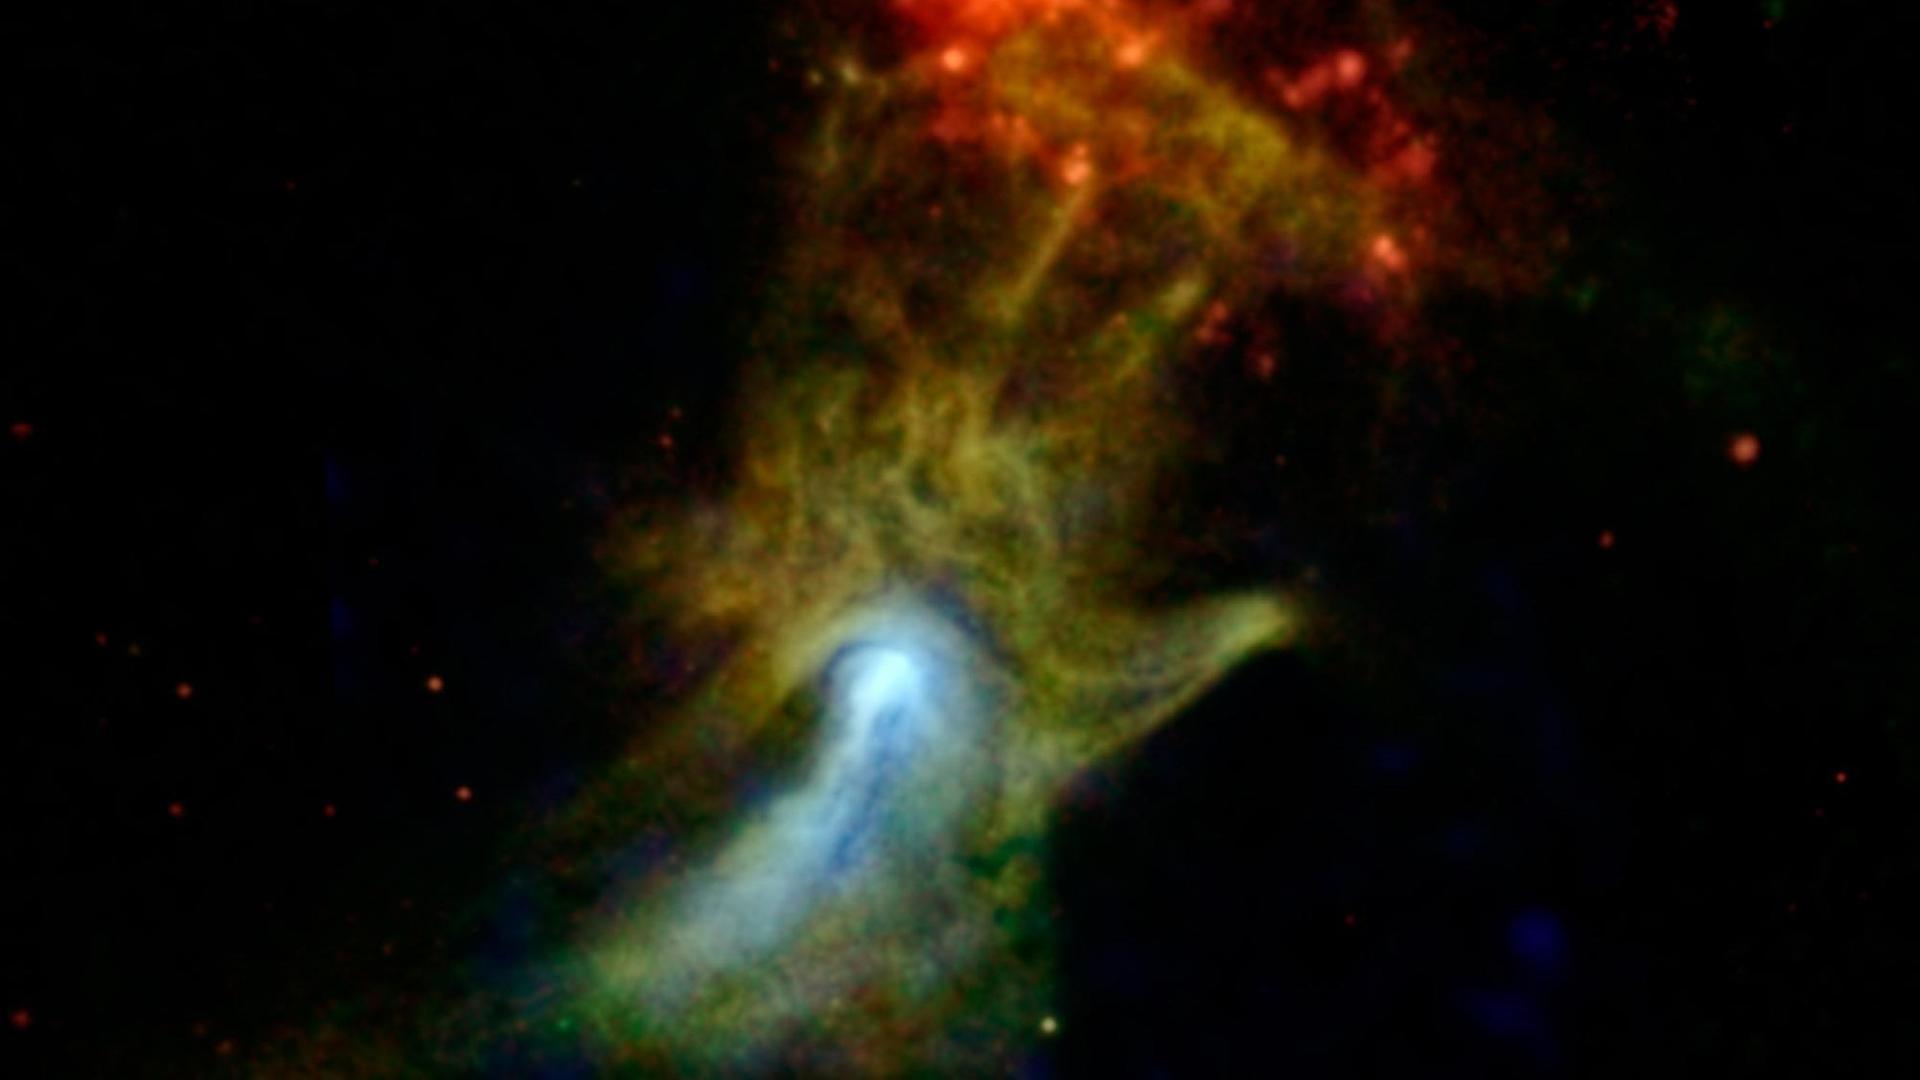 Röntgenaufnahme der "Hand Gottes" beim Pulsar B1509